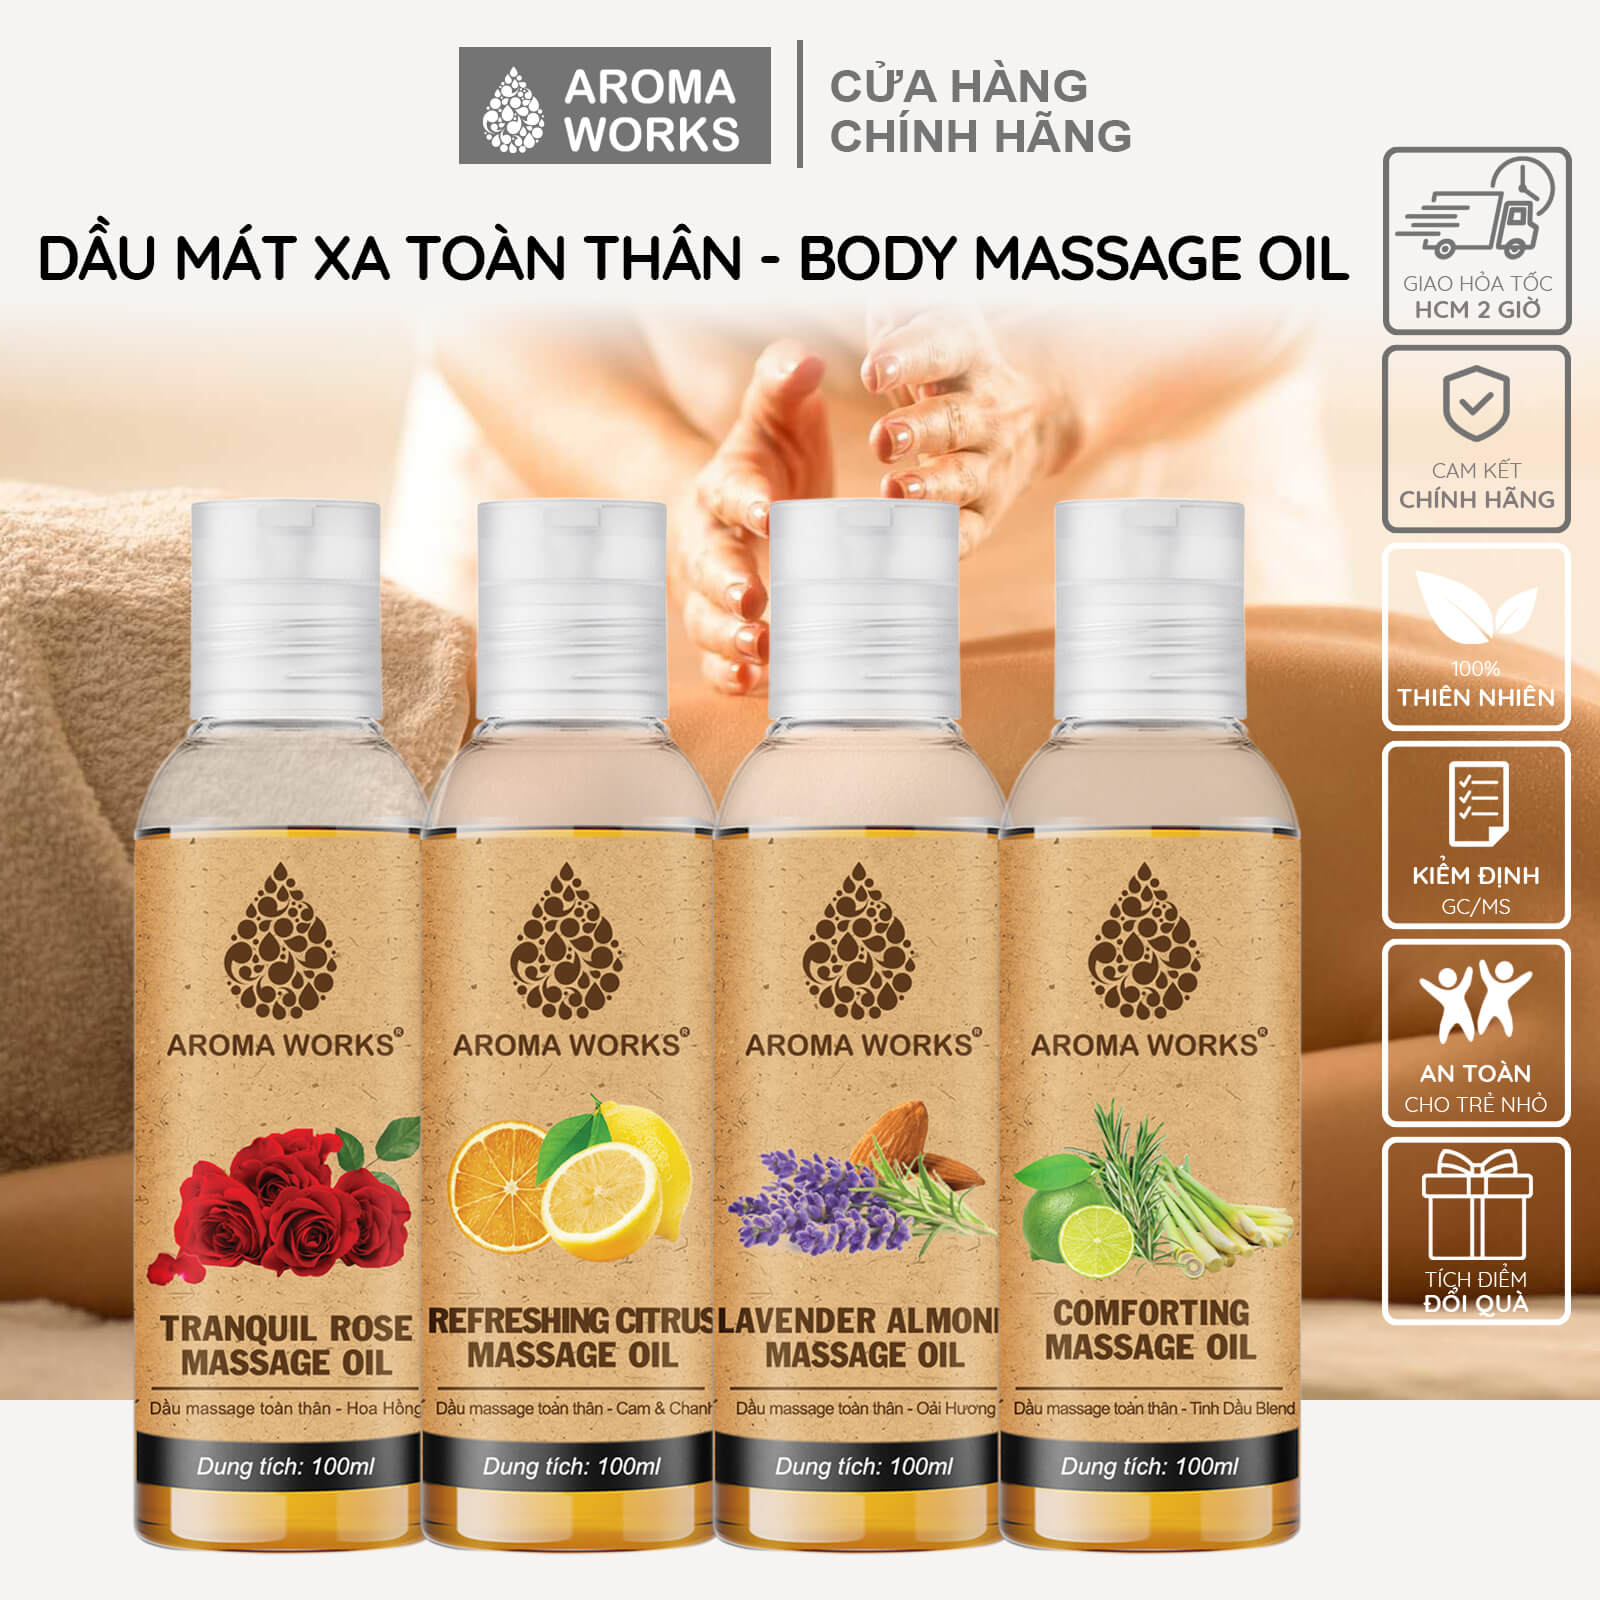 dau-massage-body-toan-than-aroma-works-mat-xa-duong-da-cap-am-duong-toc-tu-dau-huong-duong-hanh-nhan-dua